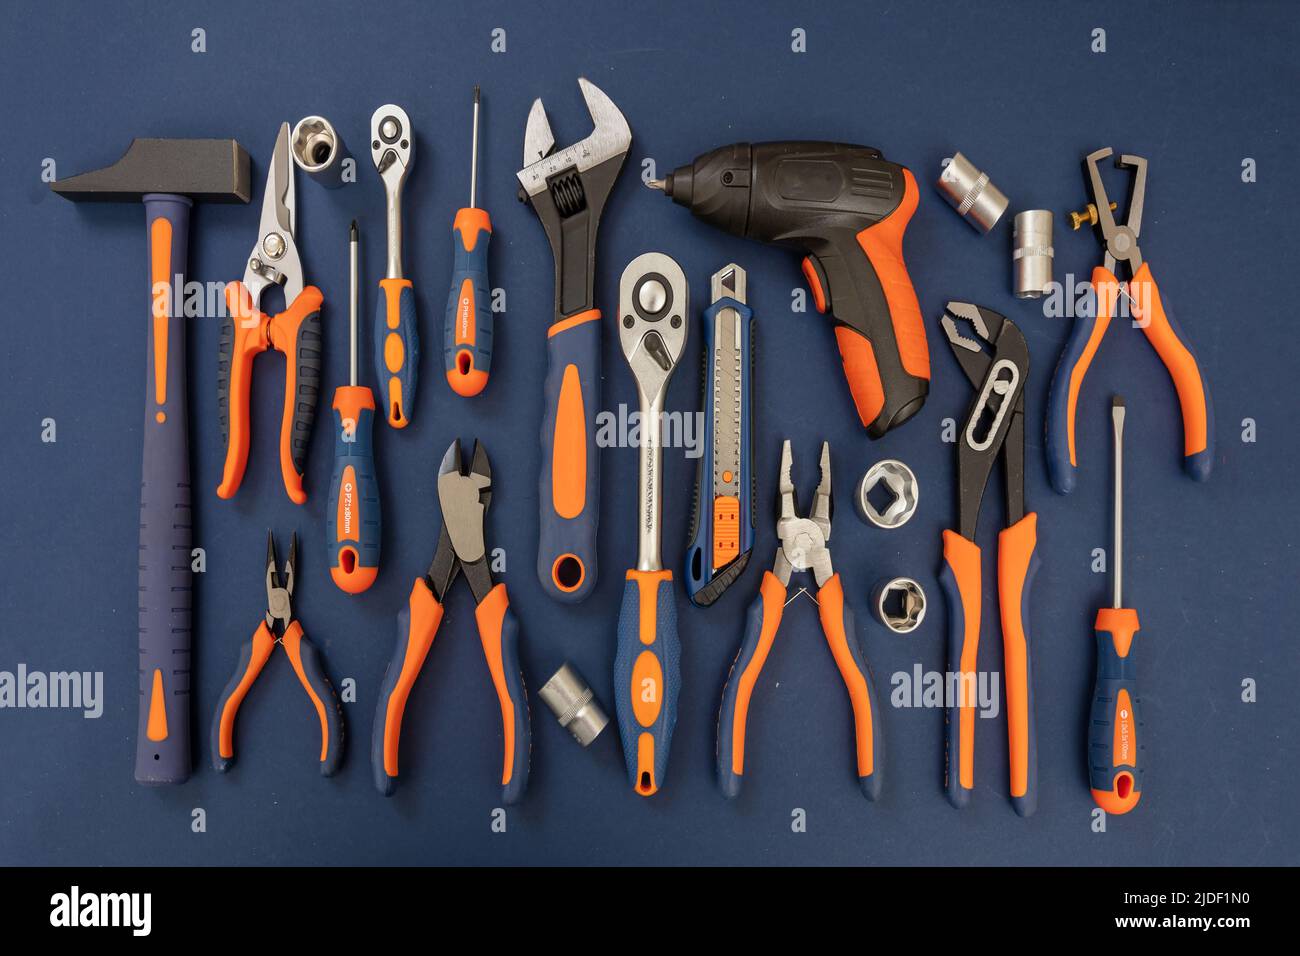 Attrezzatura su sfondo blu. Nuovo set di utensili manuali con manico arancione in gomma per riparazioni e costruzioni, disposizione piatta Foto Stock